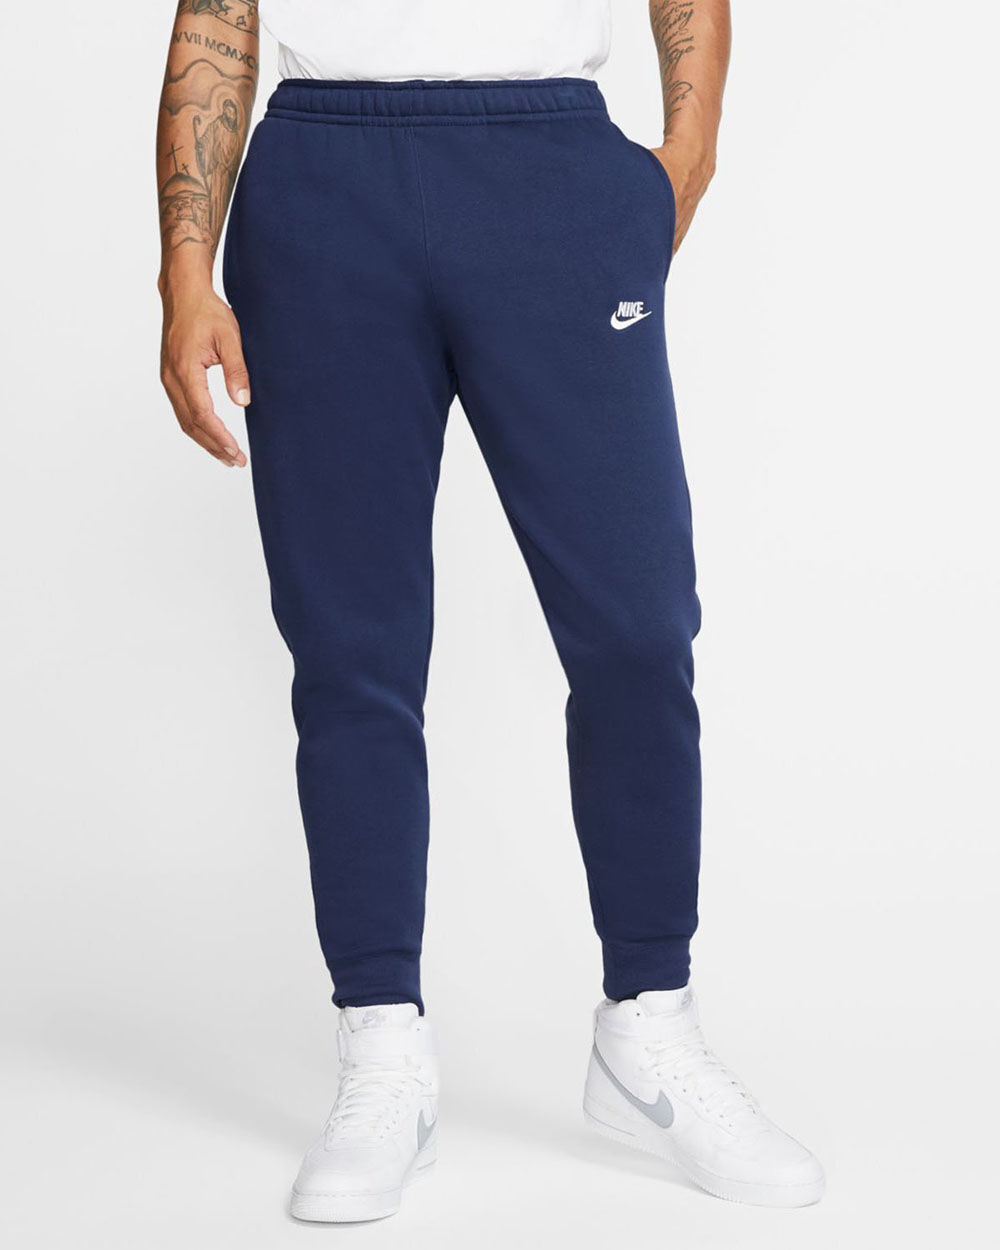 Pantalón de chándal Nike Sportswear Club Fleece Azul Marino Hombre - BV2671-410